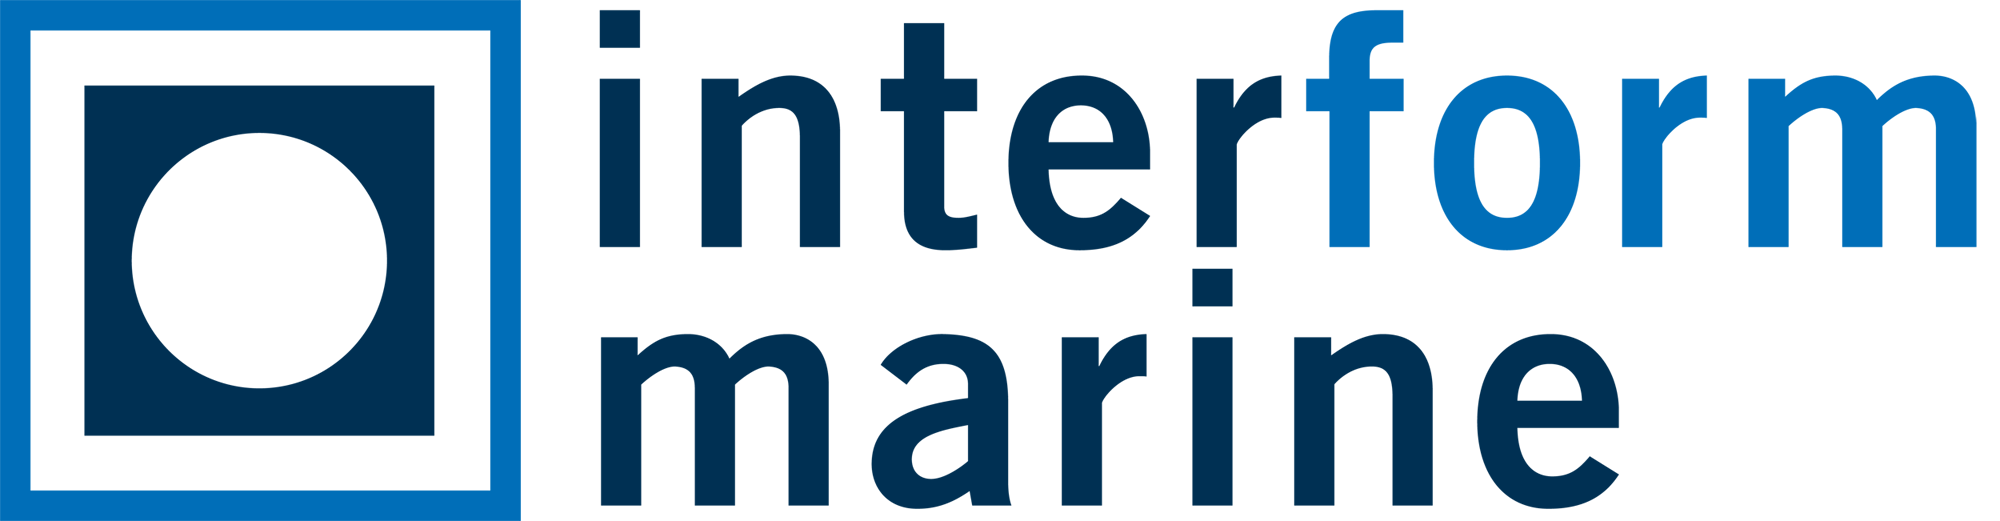 Interform-Marine